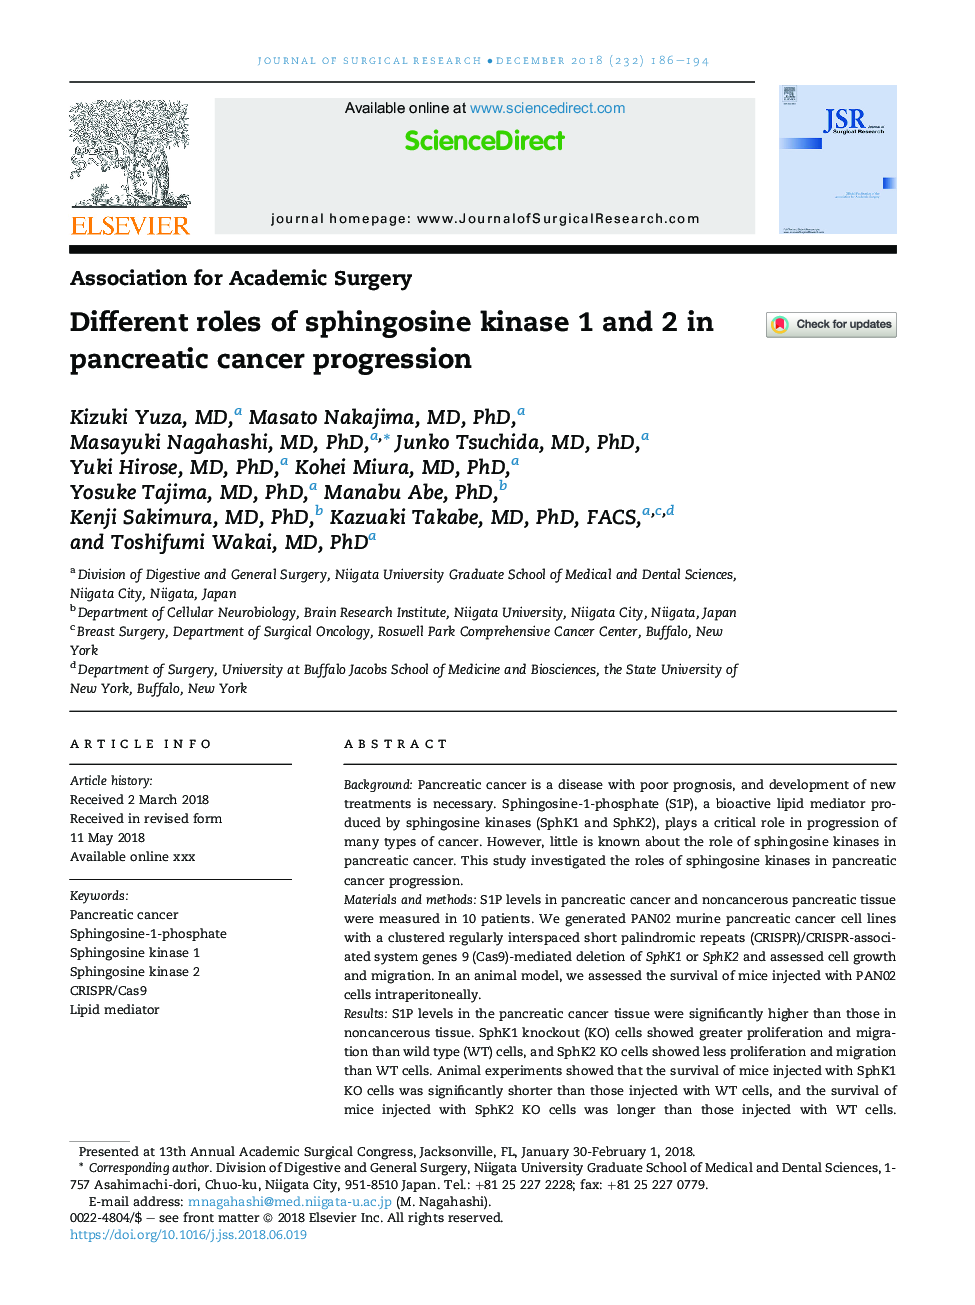 نقش های مختلف اسپینگزین کیناز 1 و 2 در پیشرفت سرطان پانکراس 